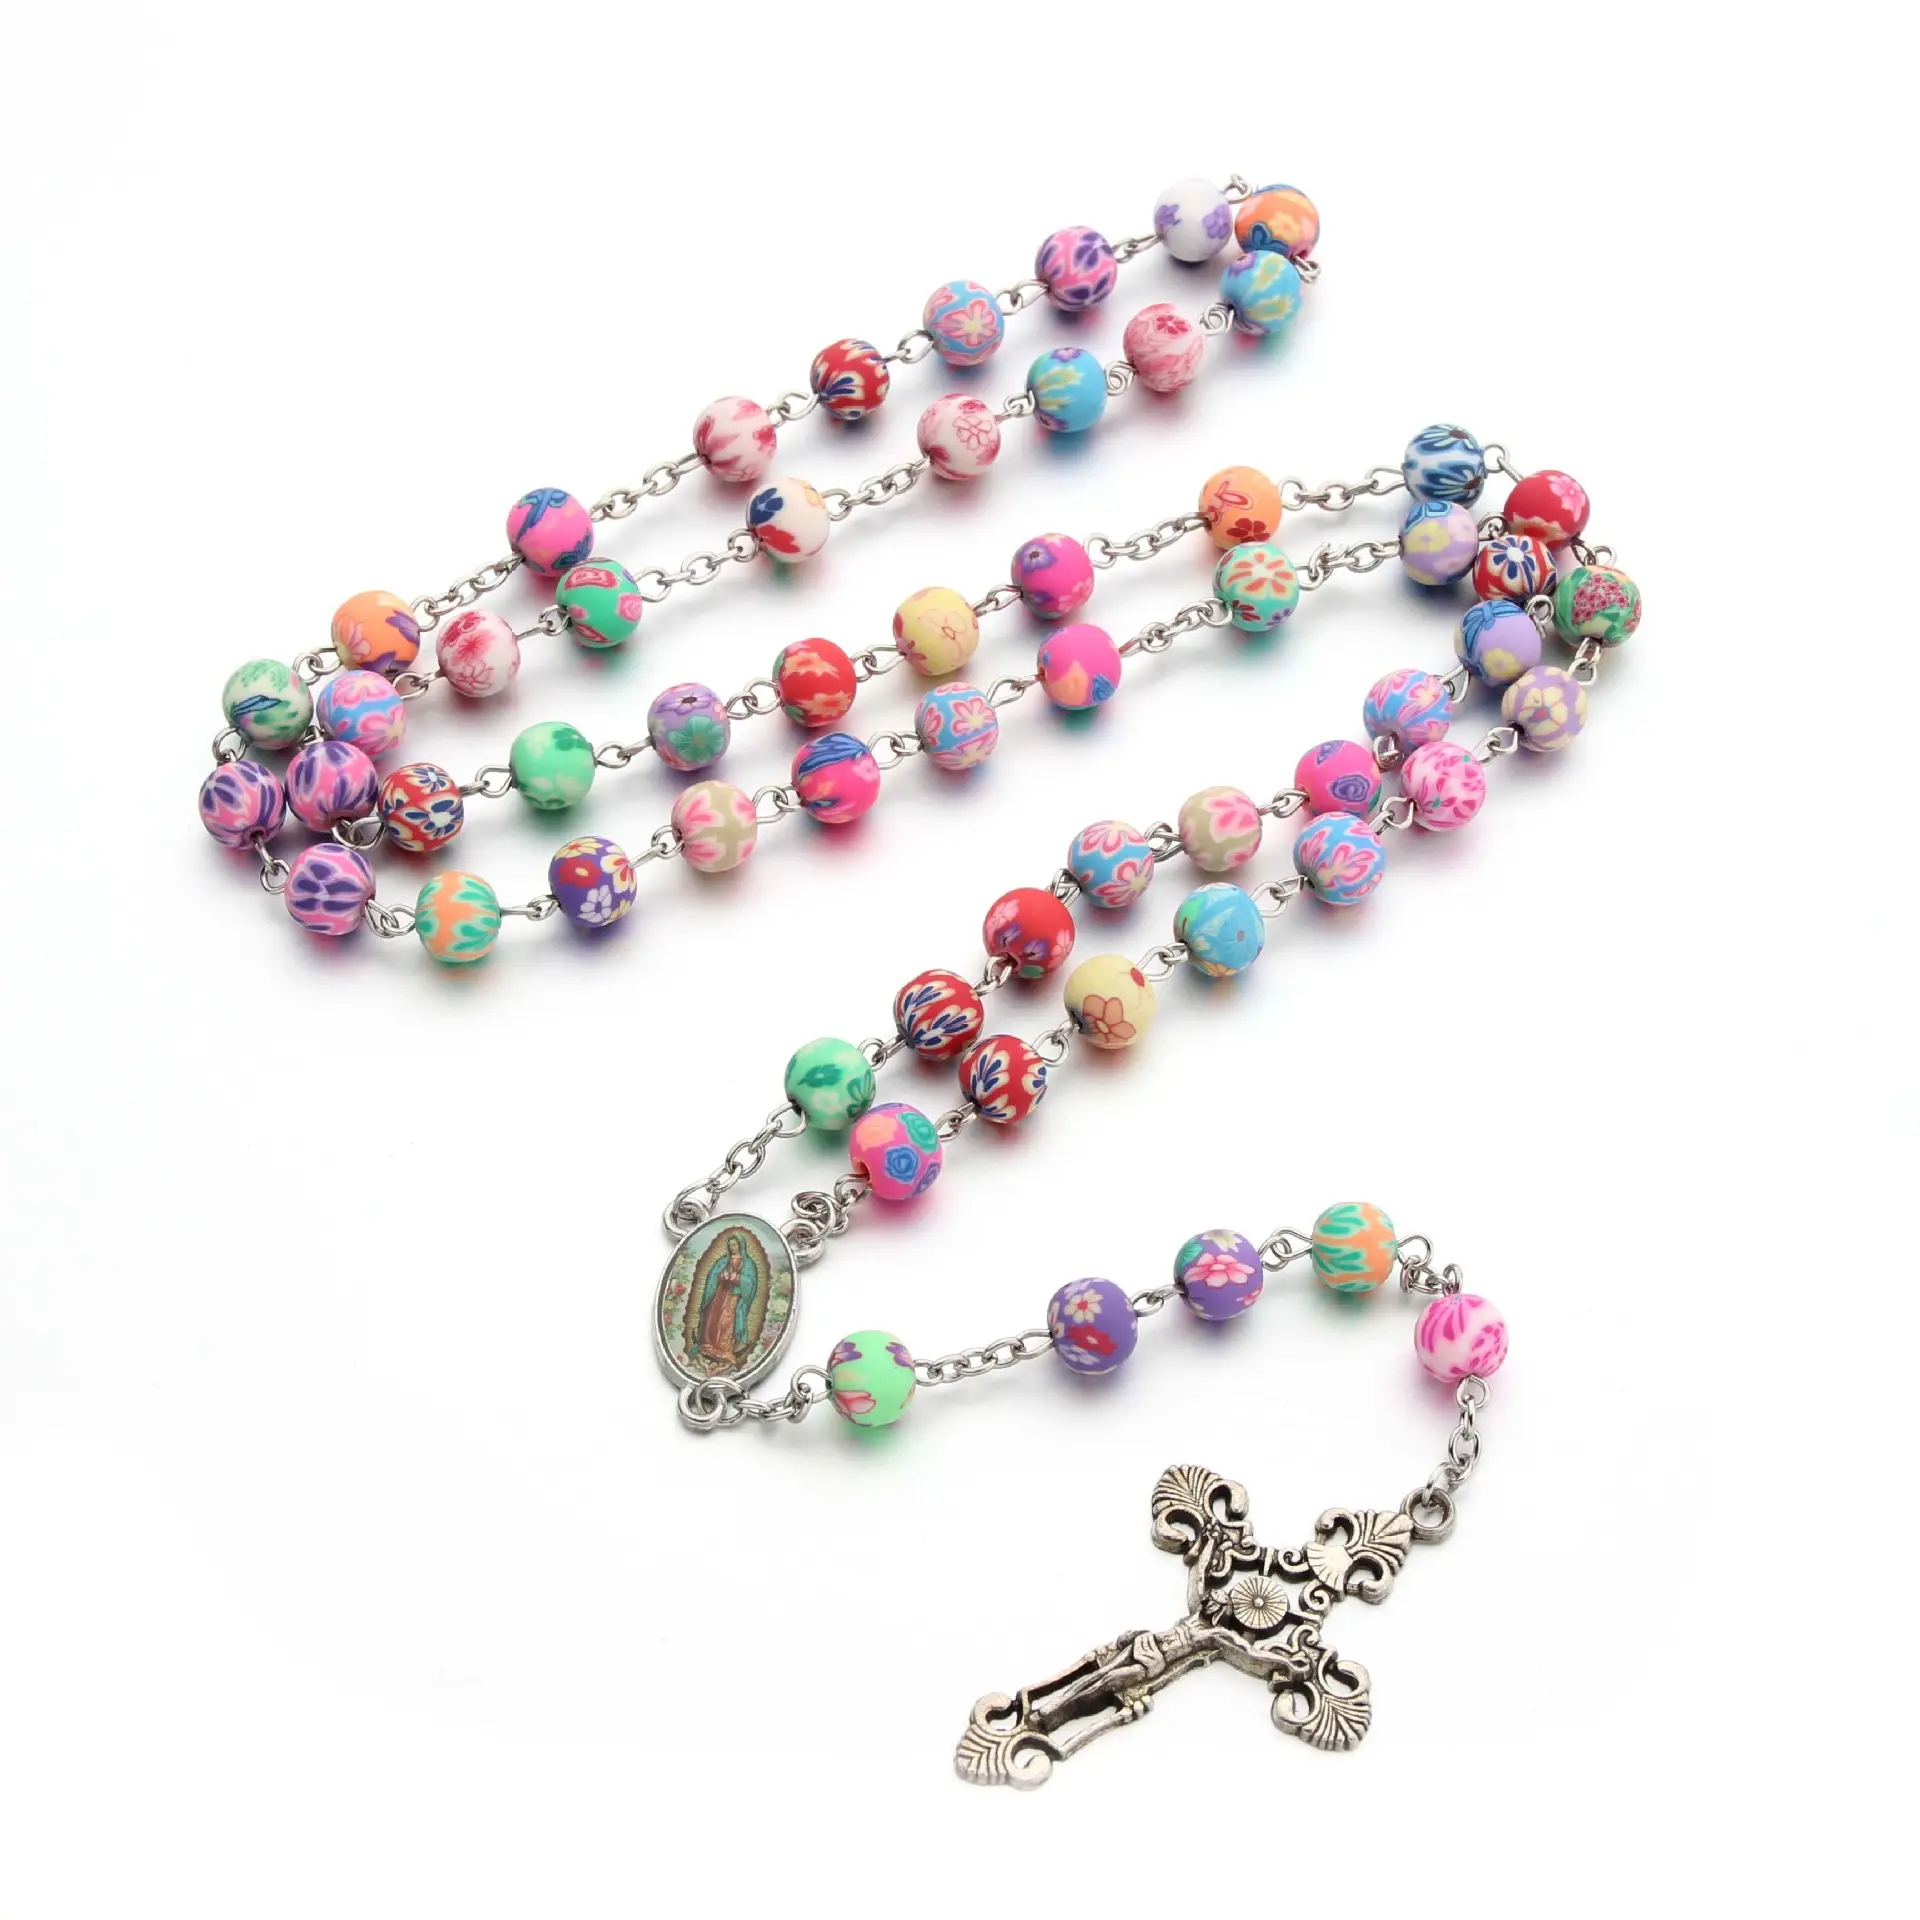 Amazon Bestseller Religiös Katholisch Christlich Keramik Rosenkranz Perlen Kreuz Halskette Bunte Perlen Jungfrau Maria Kreuz Halsketten